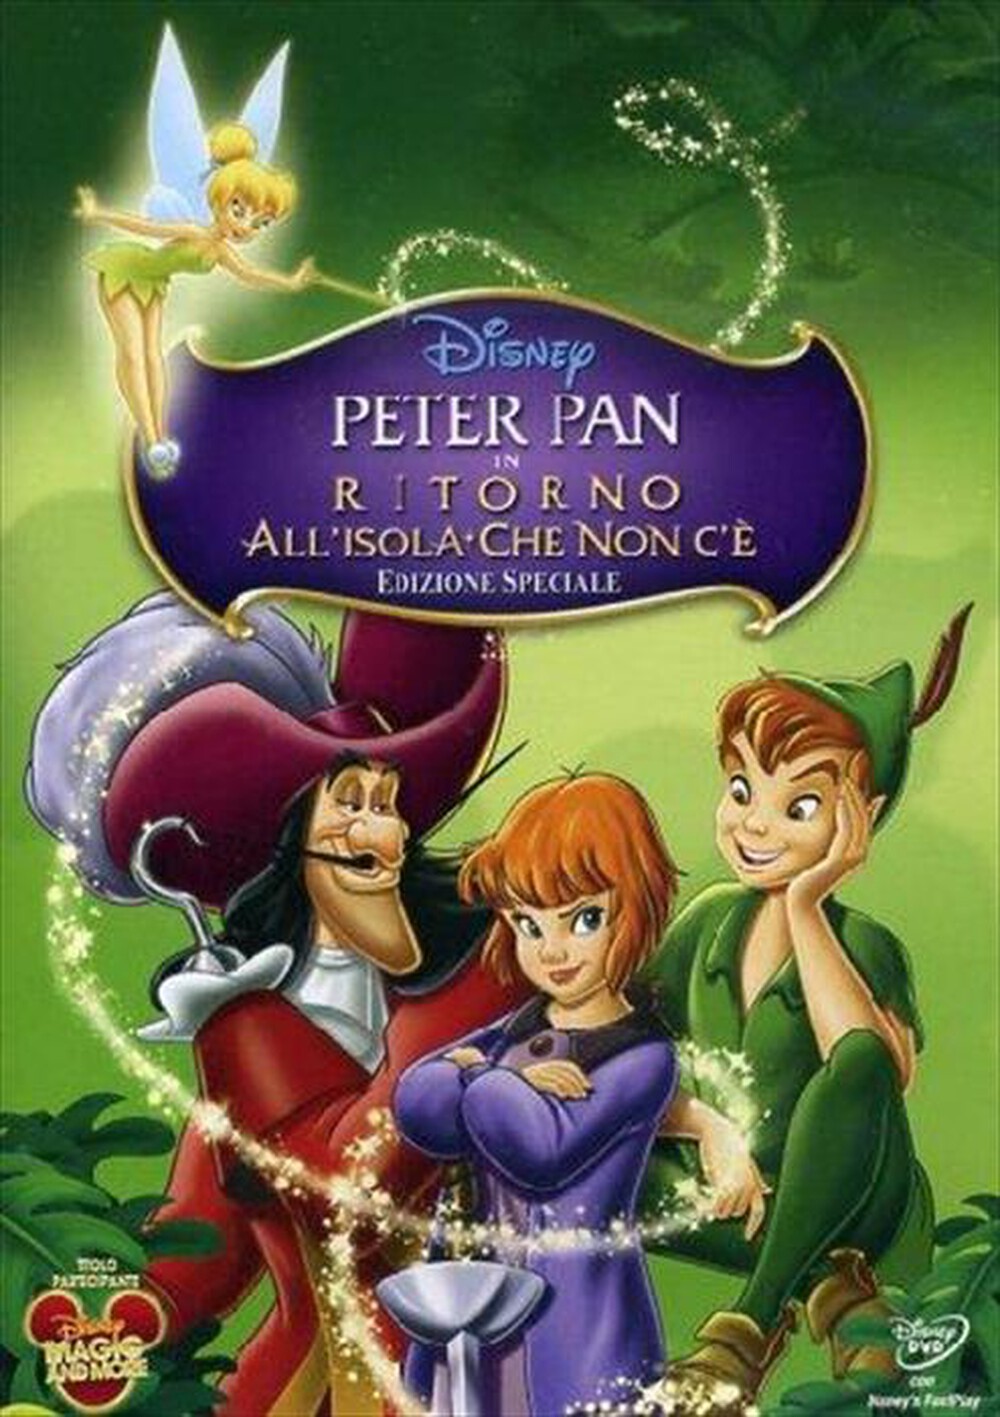 "WALT DISNEY - Peter Pan - Ritorno All'Isola Che Non C'E' (SE) - "